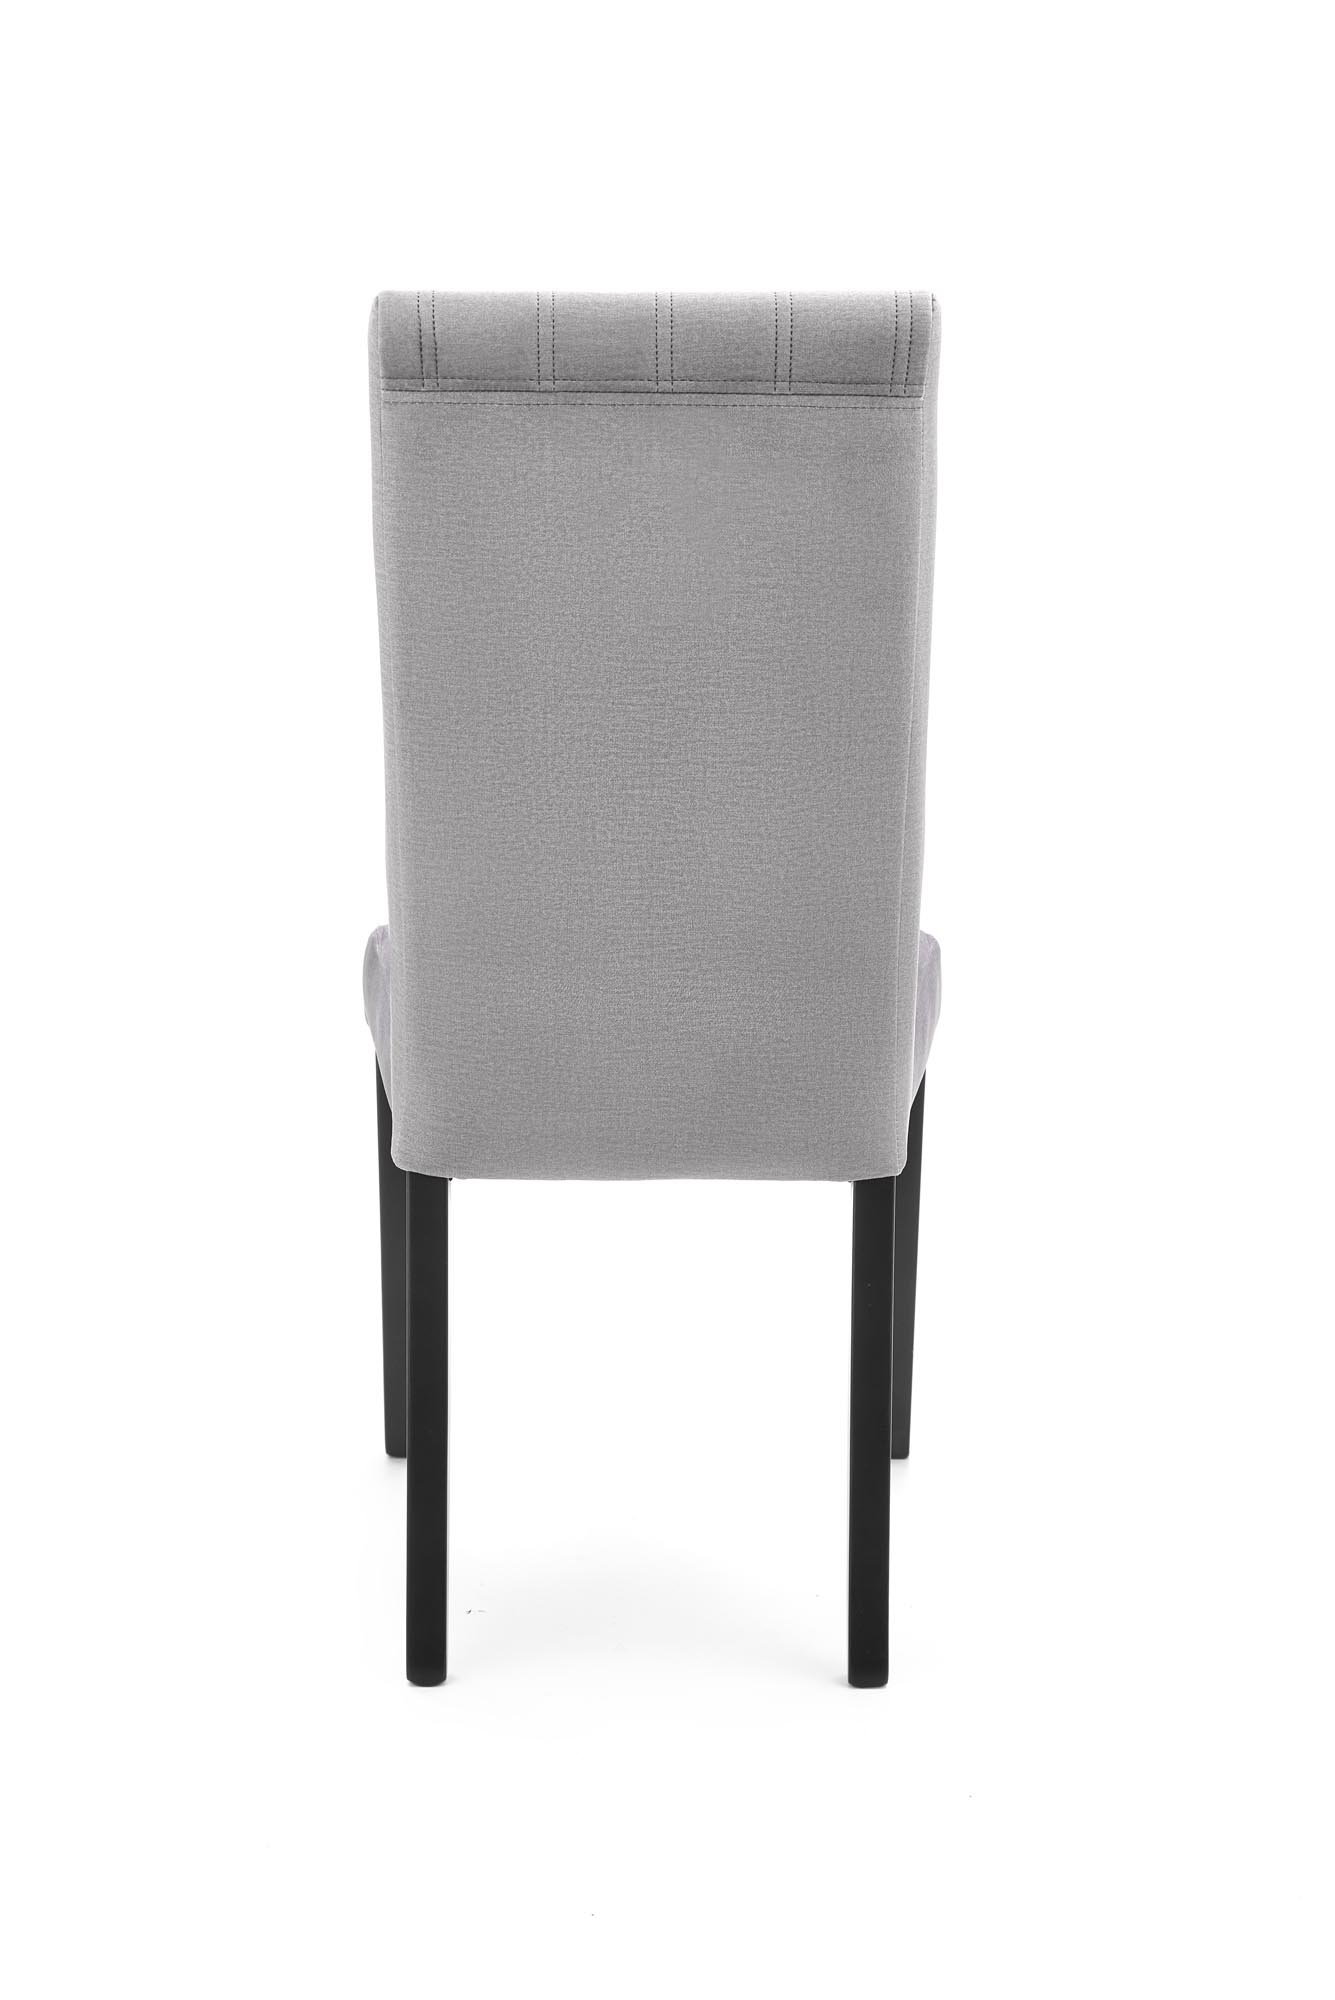 DIEGO 2 Židle Černá / čal. velvet prošívaný Pruhy - MONOLITH 85 (světlý popel) diego 2 Židle Černý / tap. velvet prošívané pasy - monolith 85 (jasný popel)